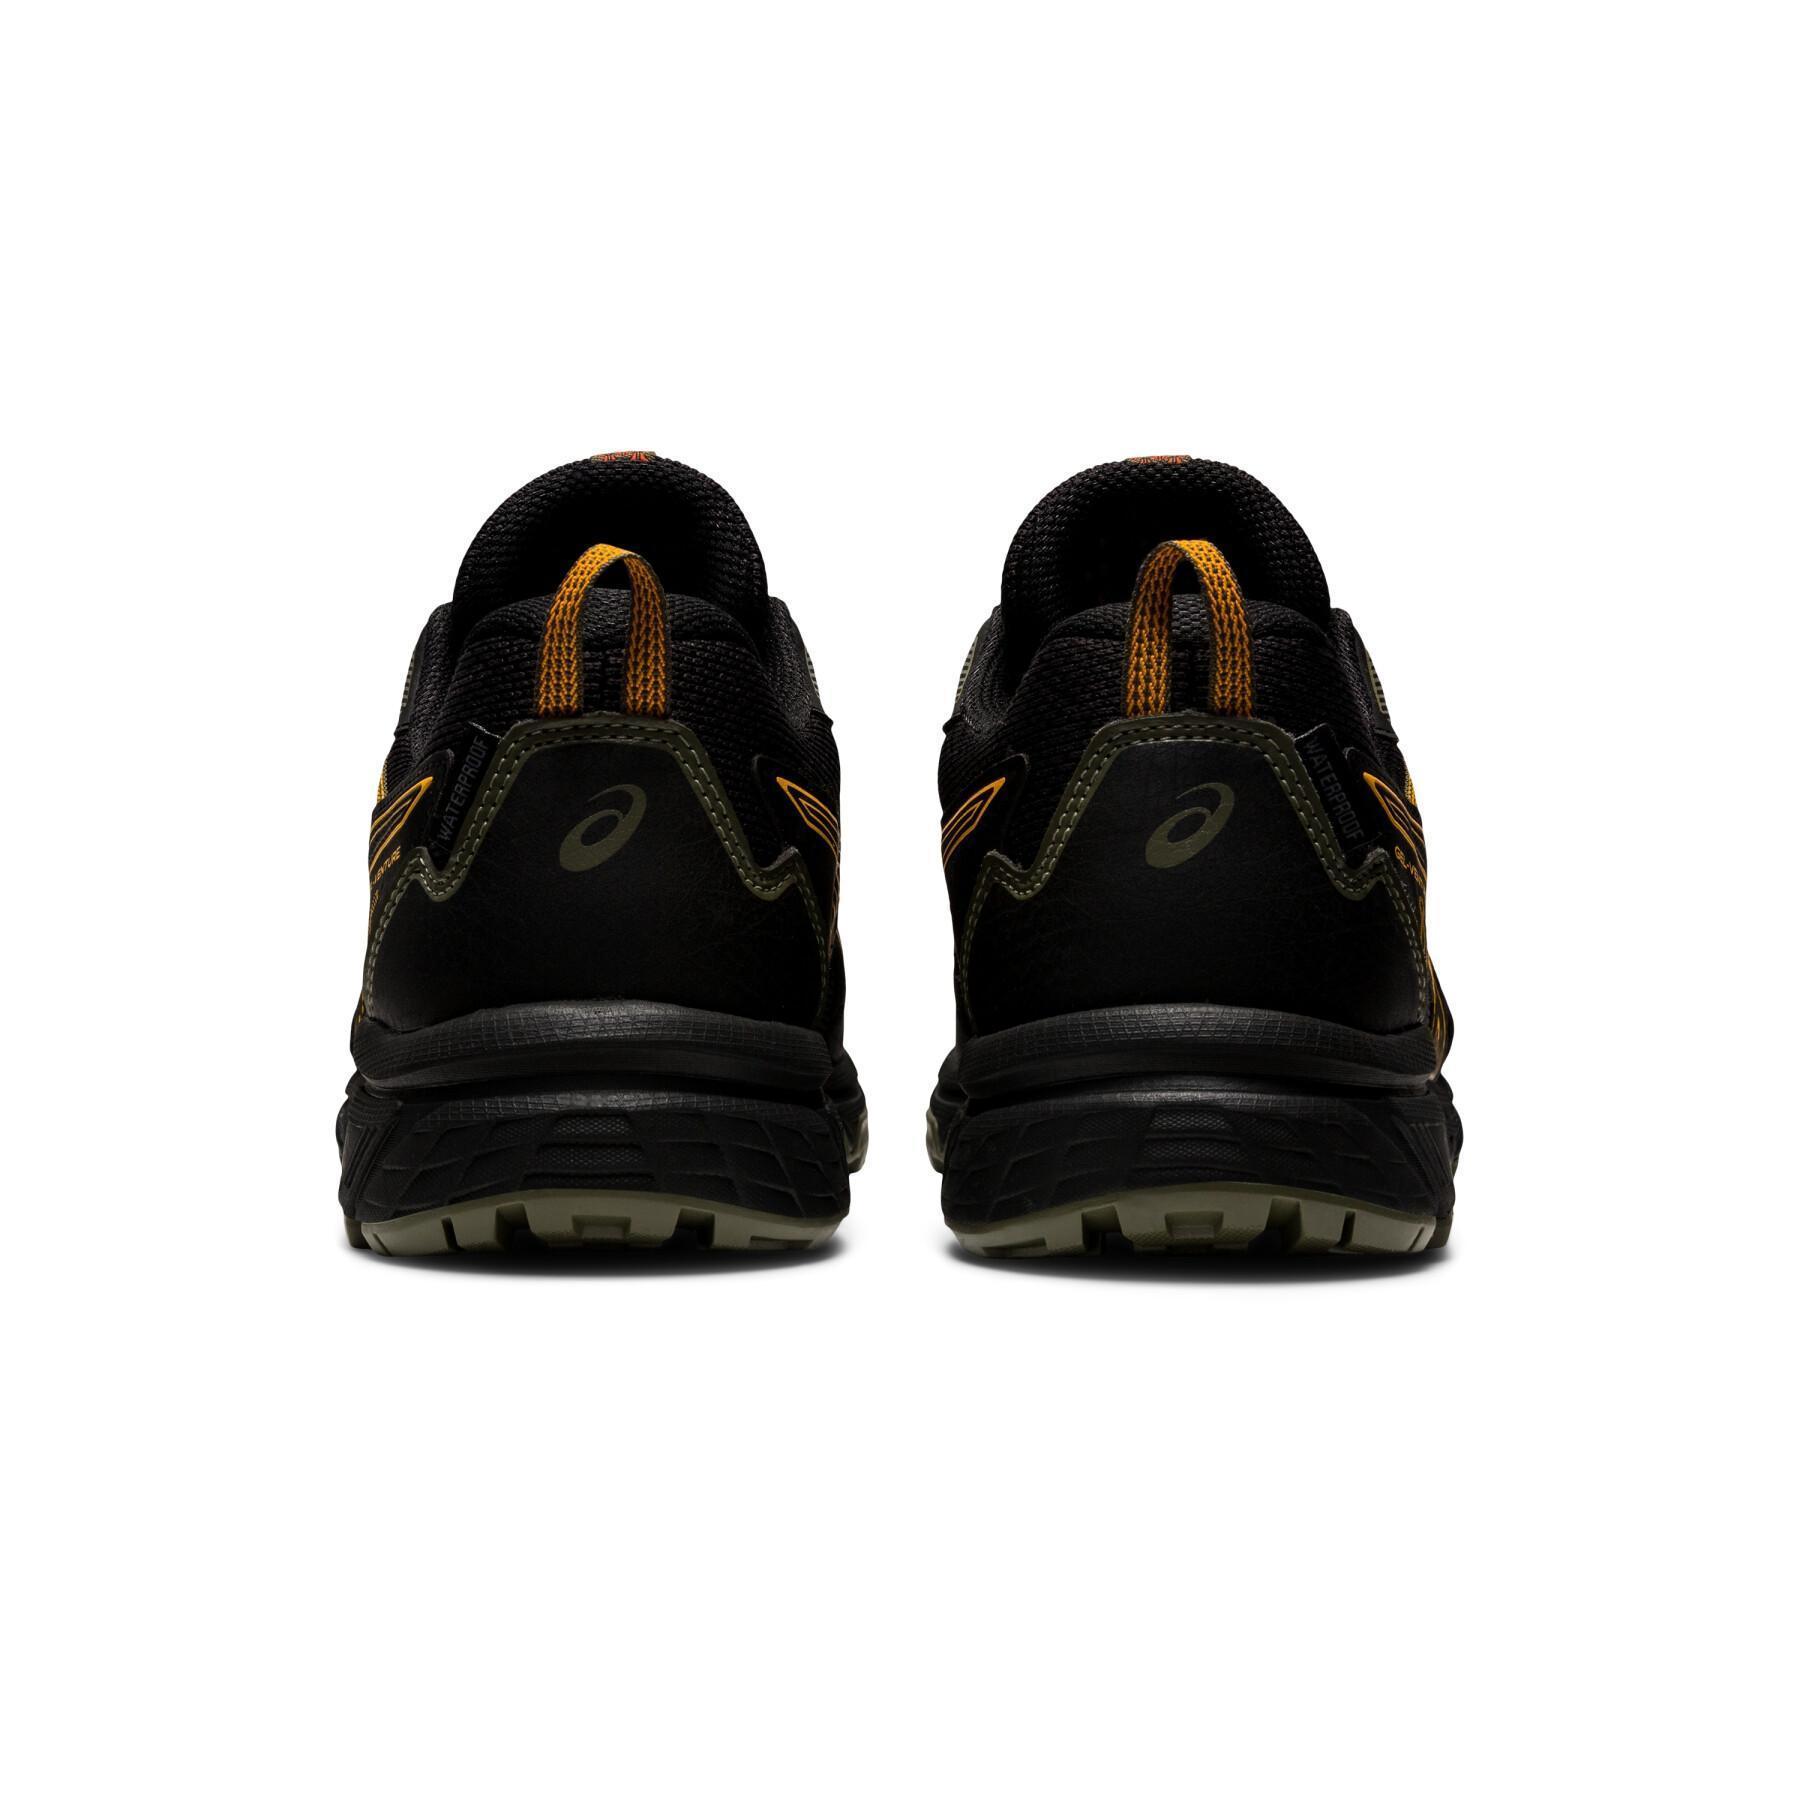 Trail running shoes Asics Gel-venture 8 waterproof